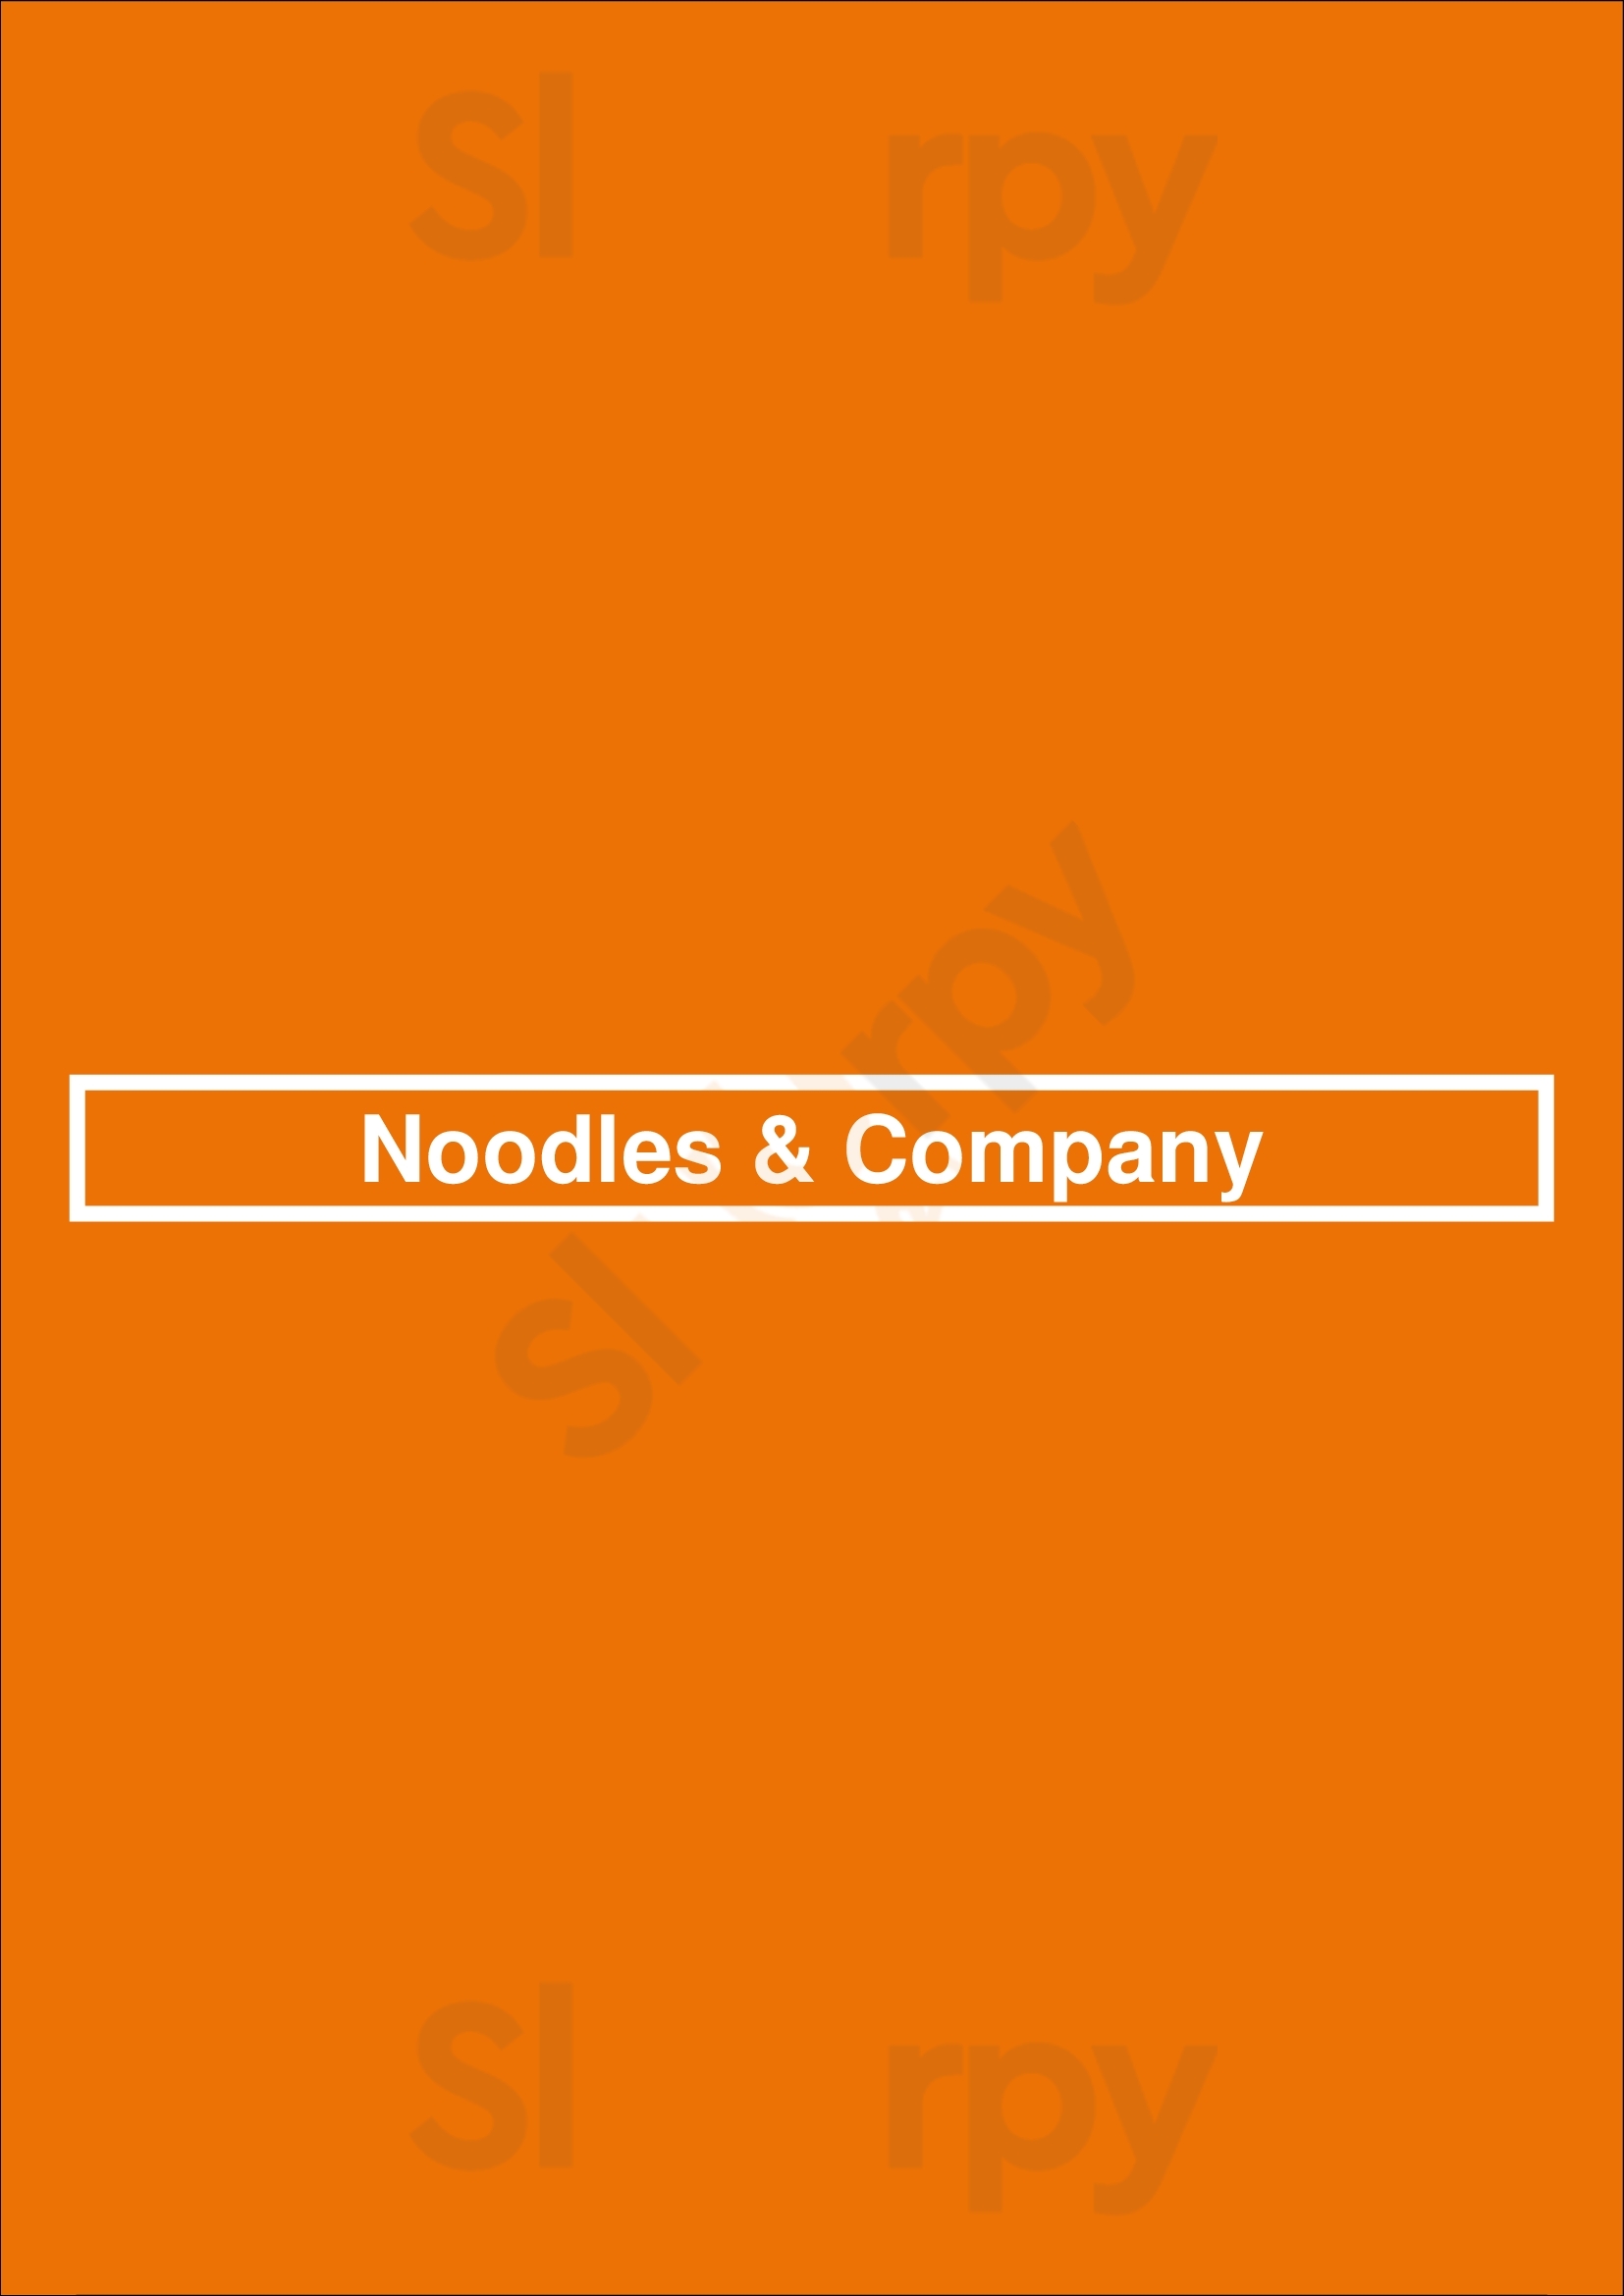 Noodles & Company Green Bay Menu - 1